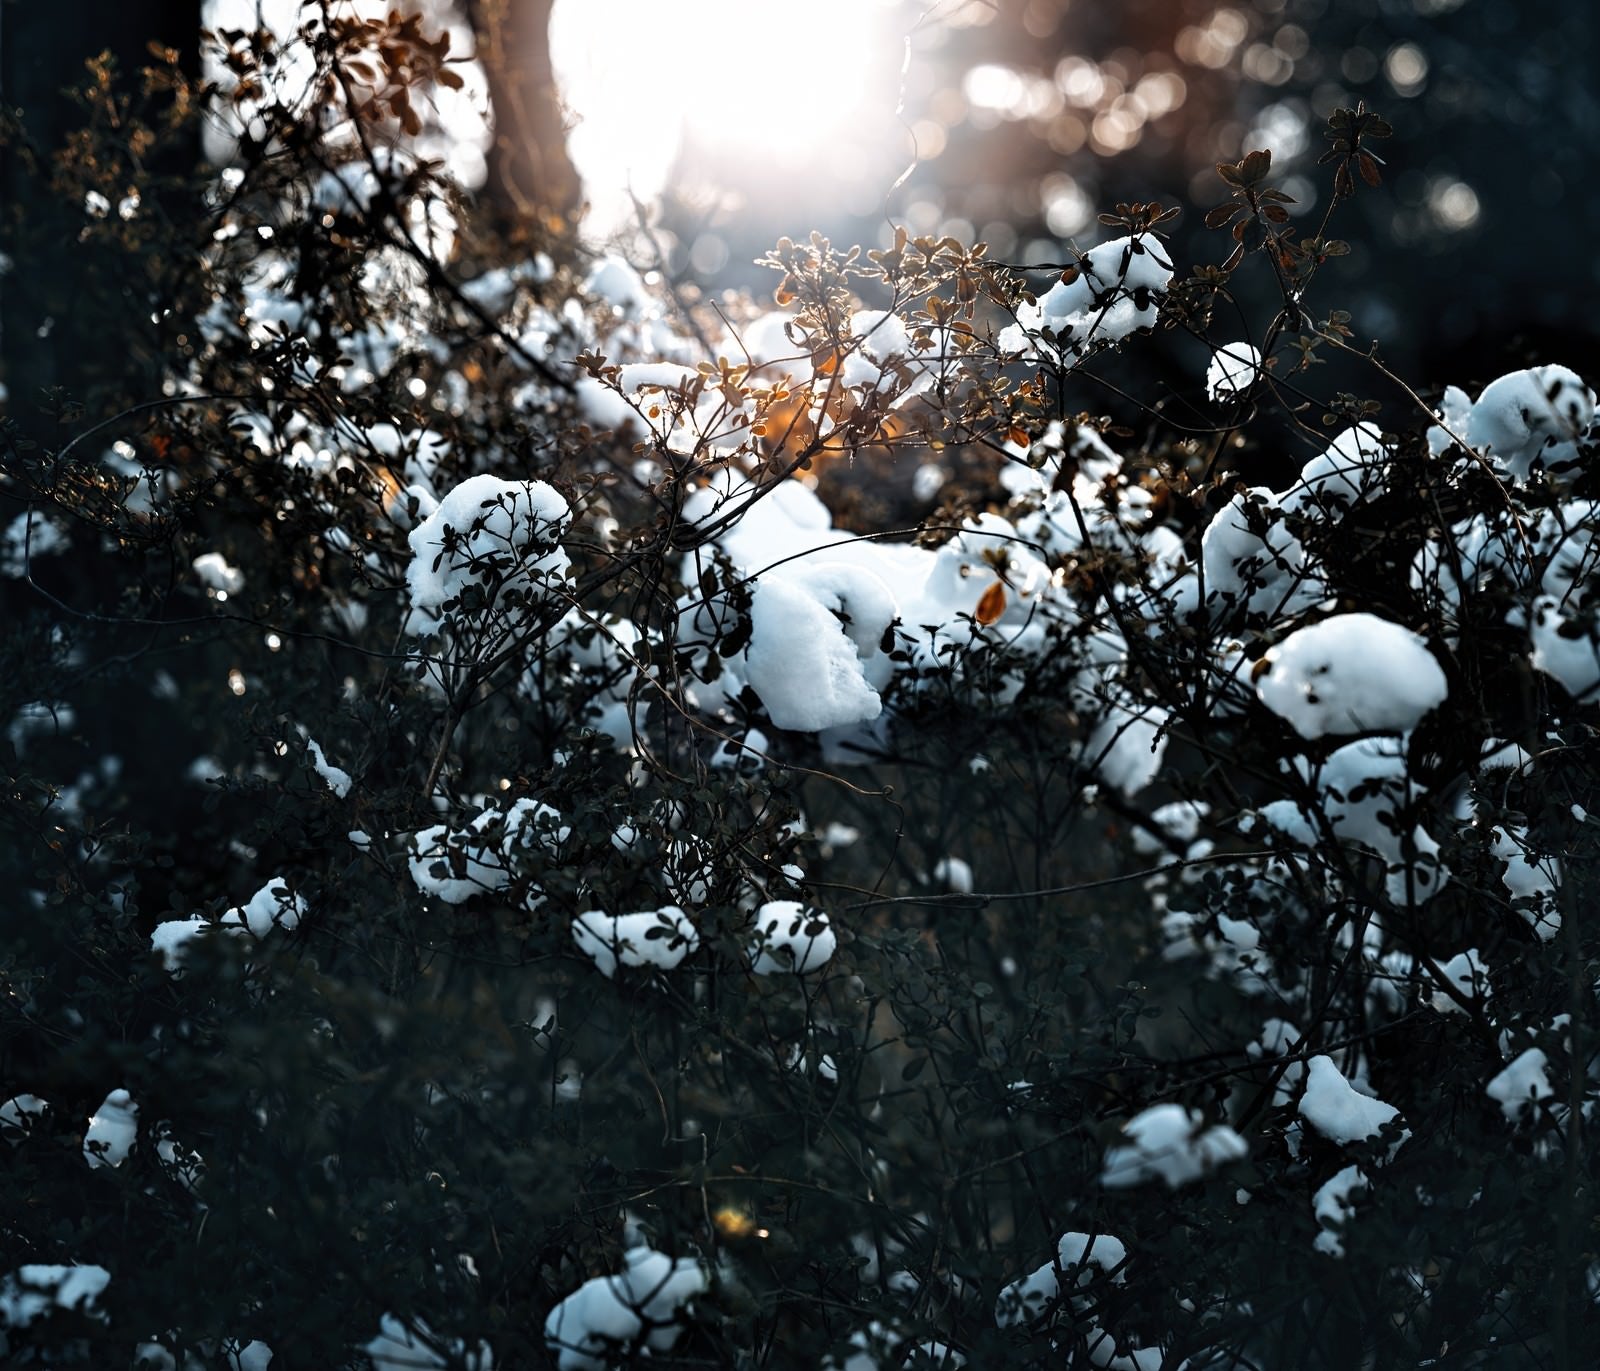 「雪が降った朝」の写真